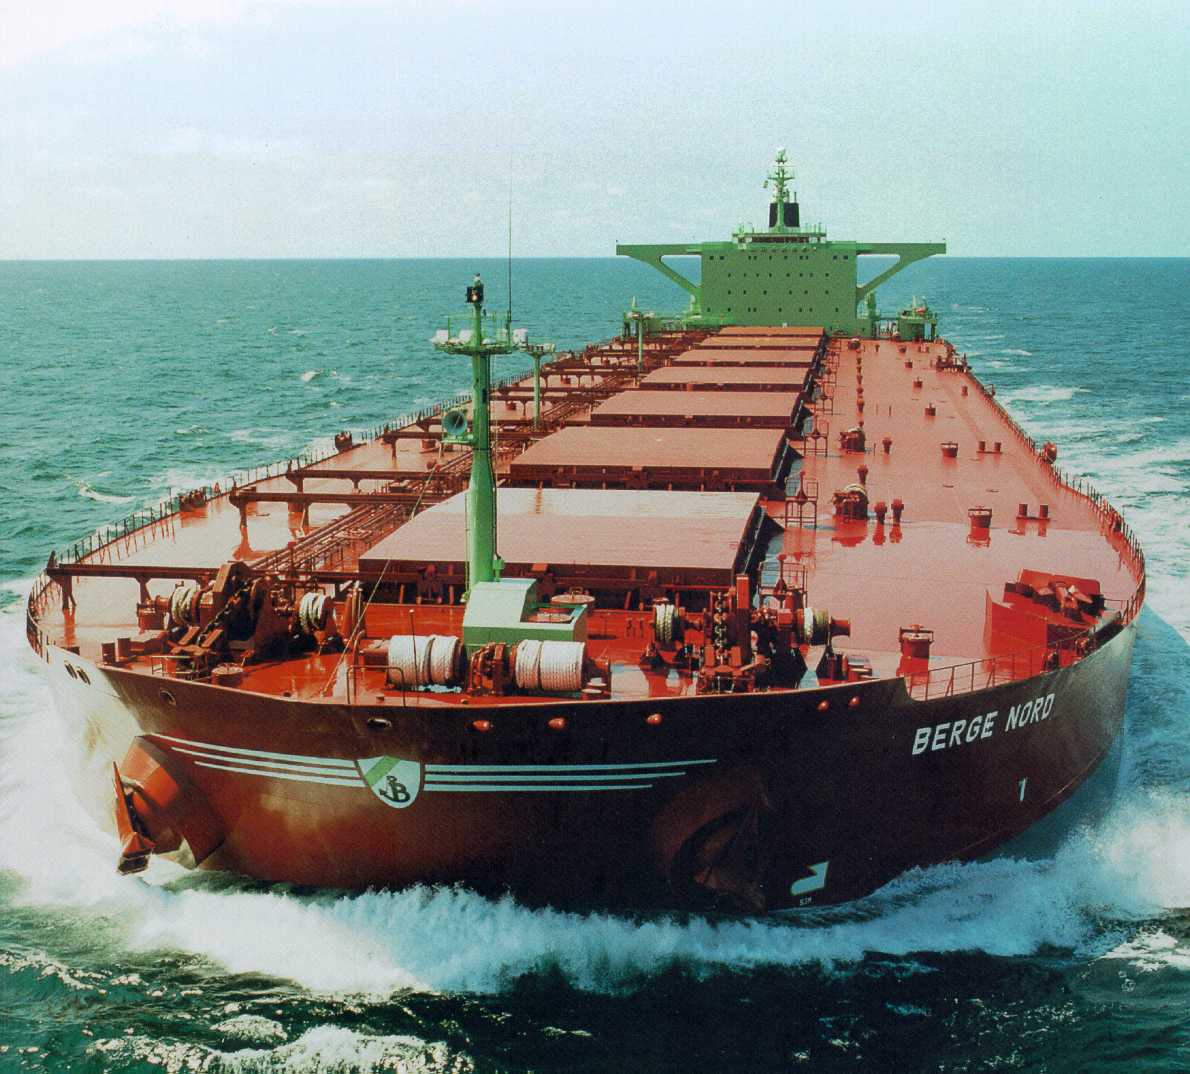 Kuyrut Trading Zone Oil+tanker-25000